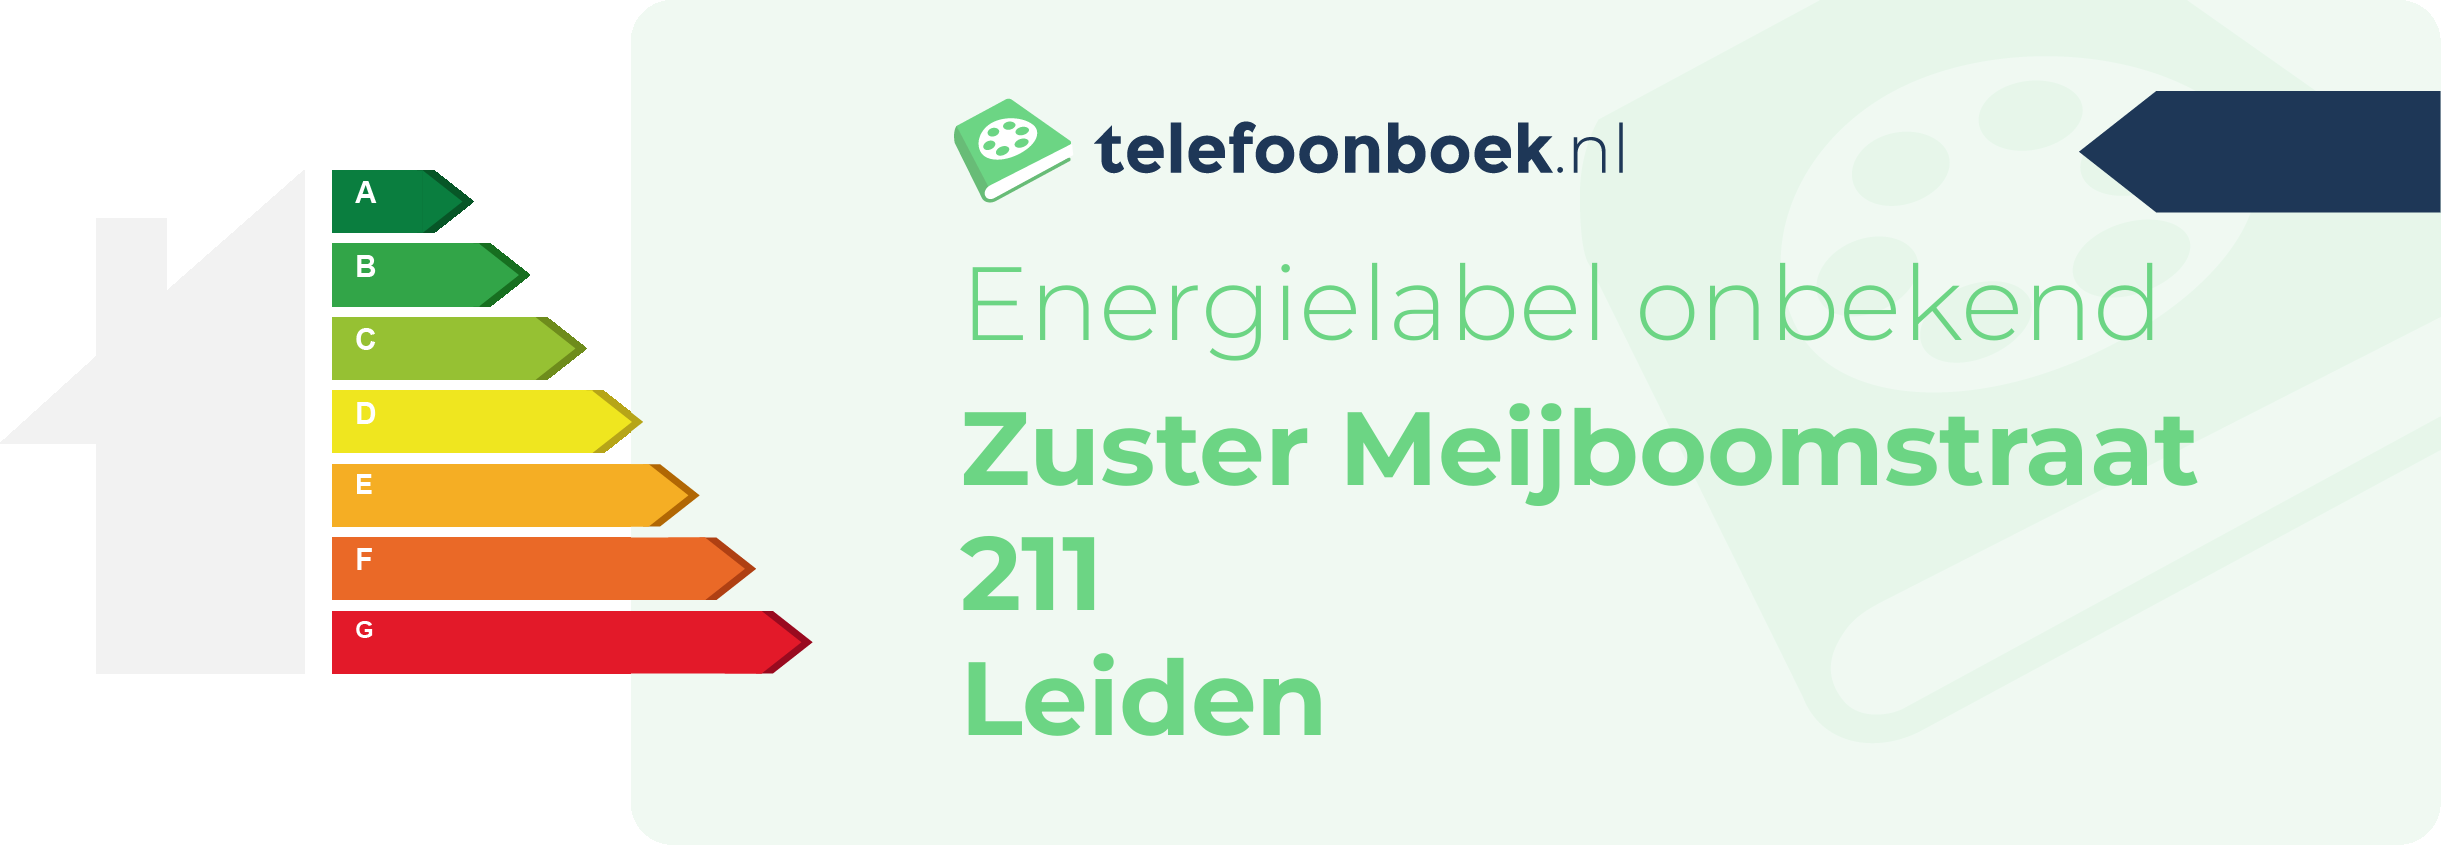 Energielabel Zuster Meijboomstraat 211 Leiden